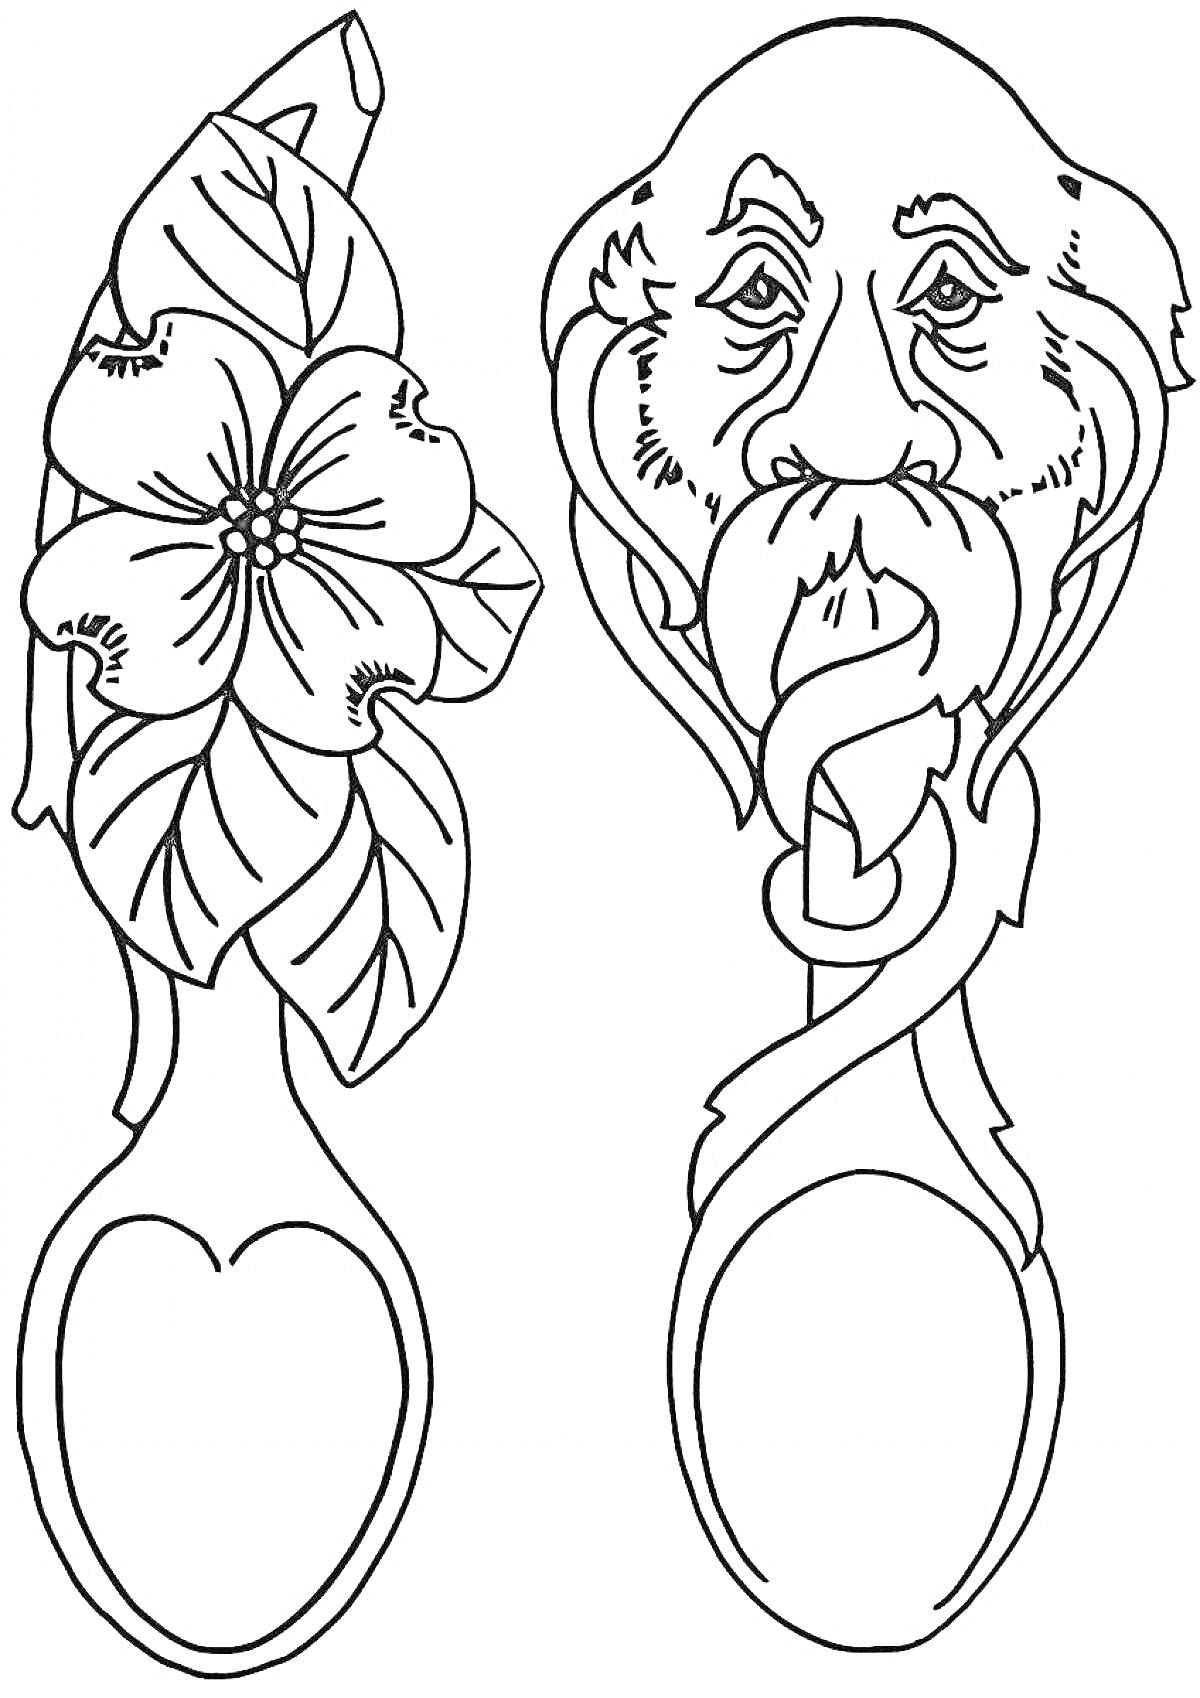 Раскраска деревянные ложки с цветком и лицом старика